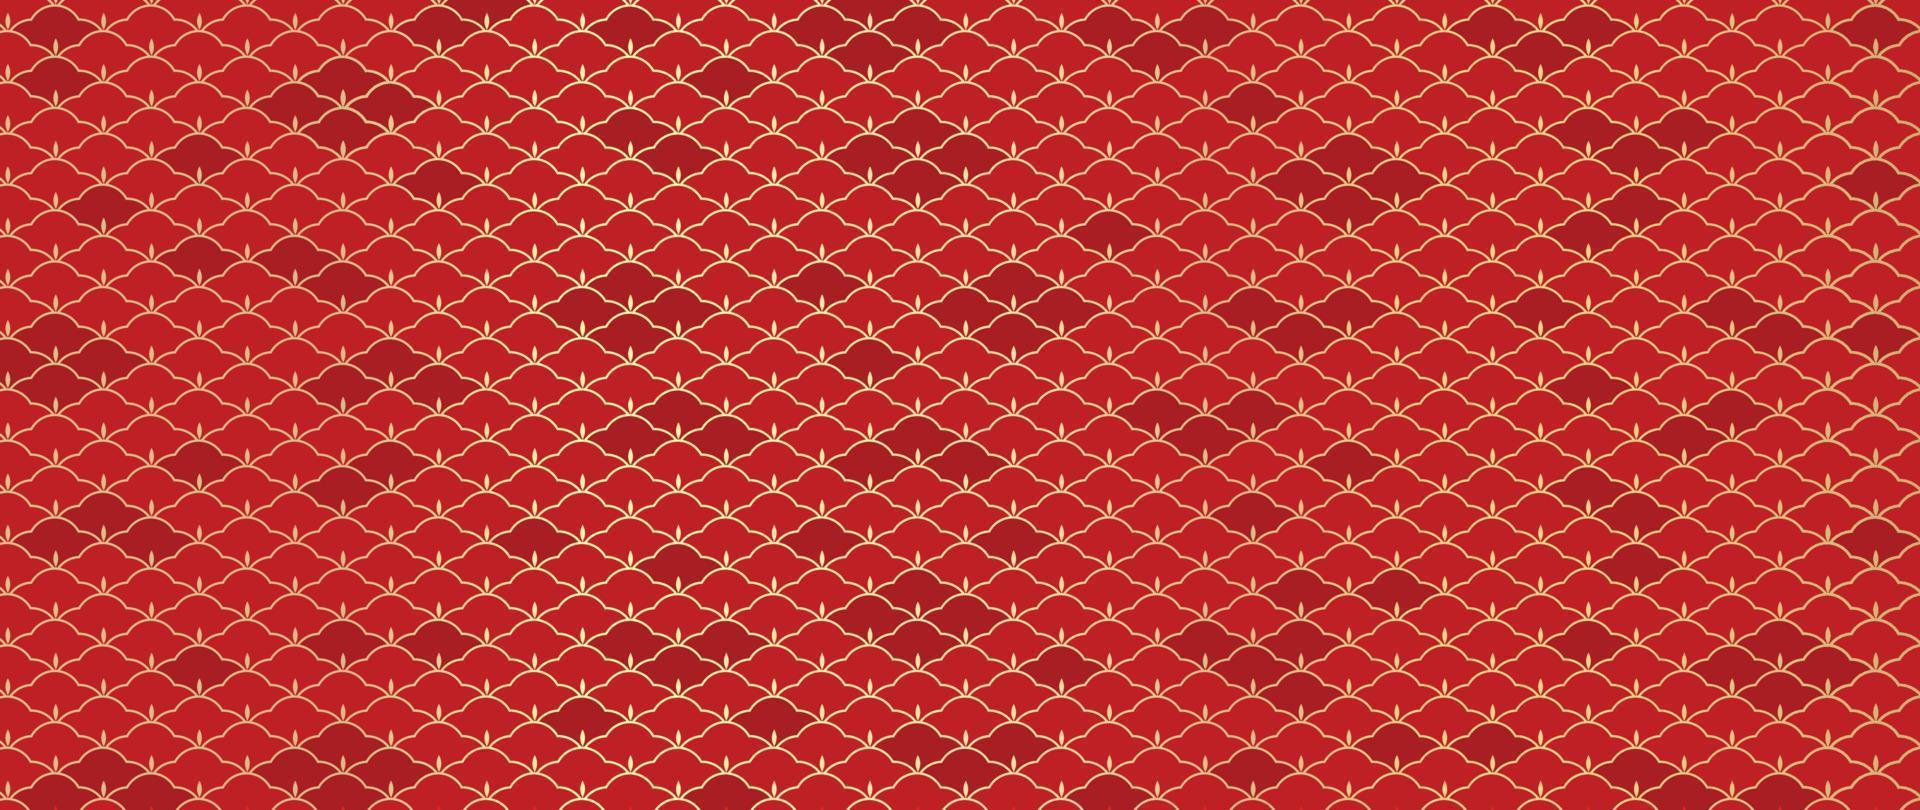 feliz ano novo chinês vetor de fundo vermelho. padrão tradicional chinês e japonês com formas geométricas, flores douradas. papel de parede estilo oriental para impressão, tecido, capa, banner, decoração.